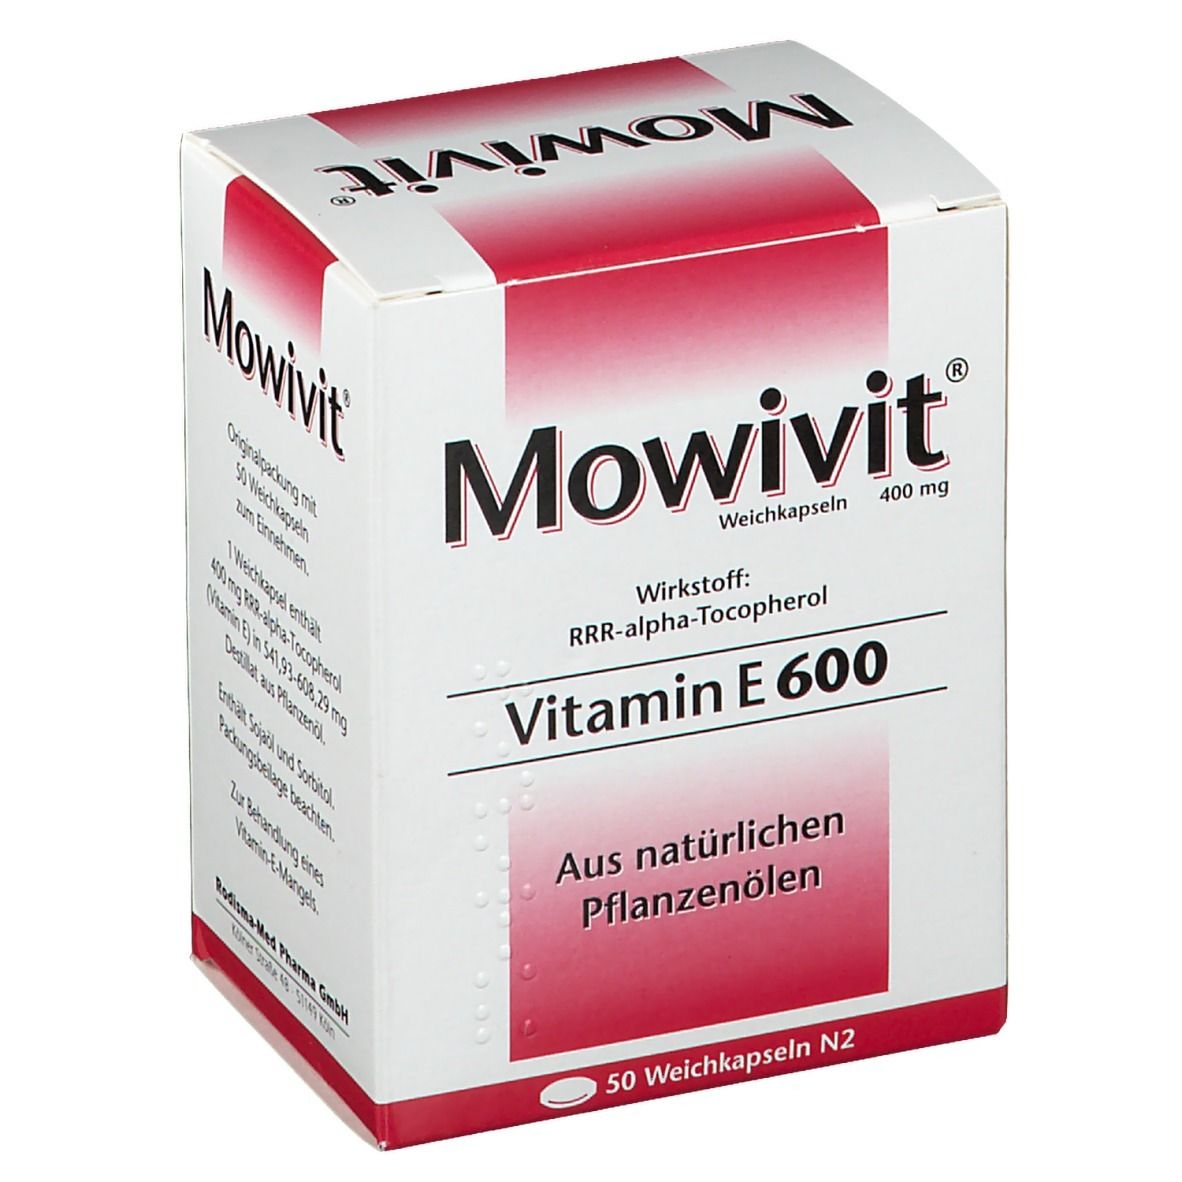 Mowivit® Vitamin E 600